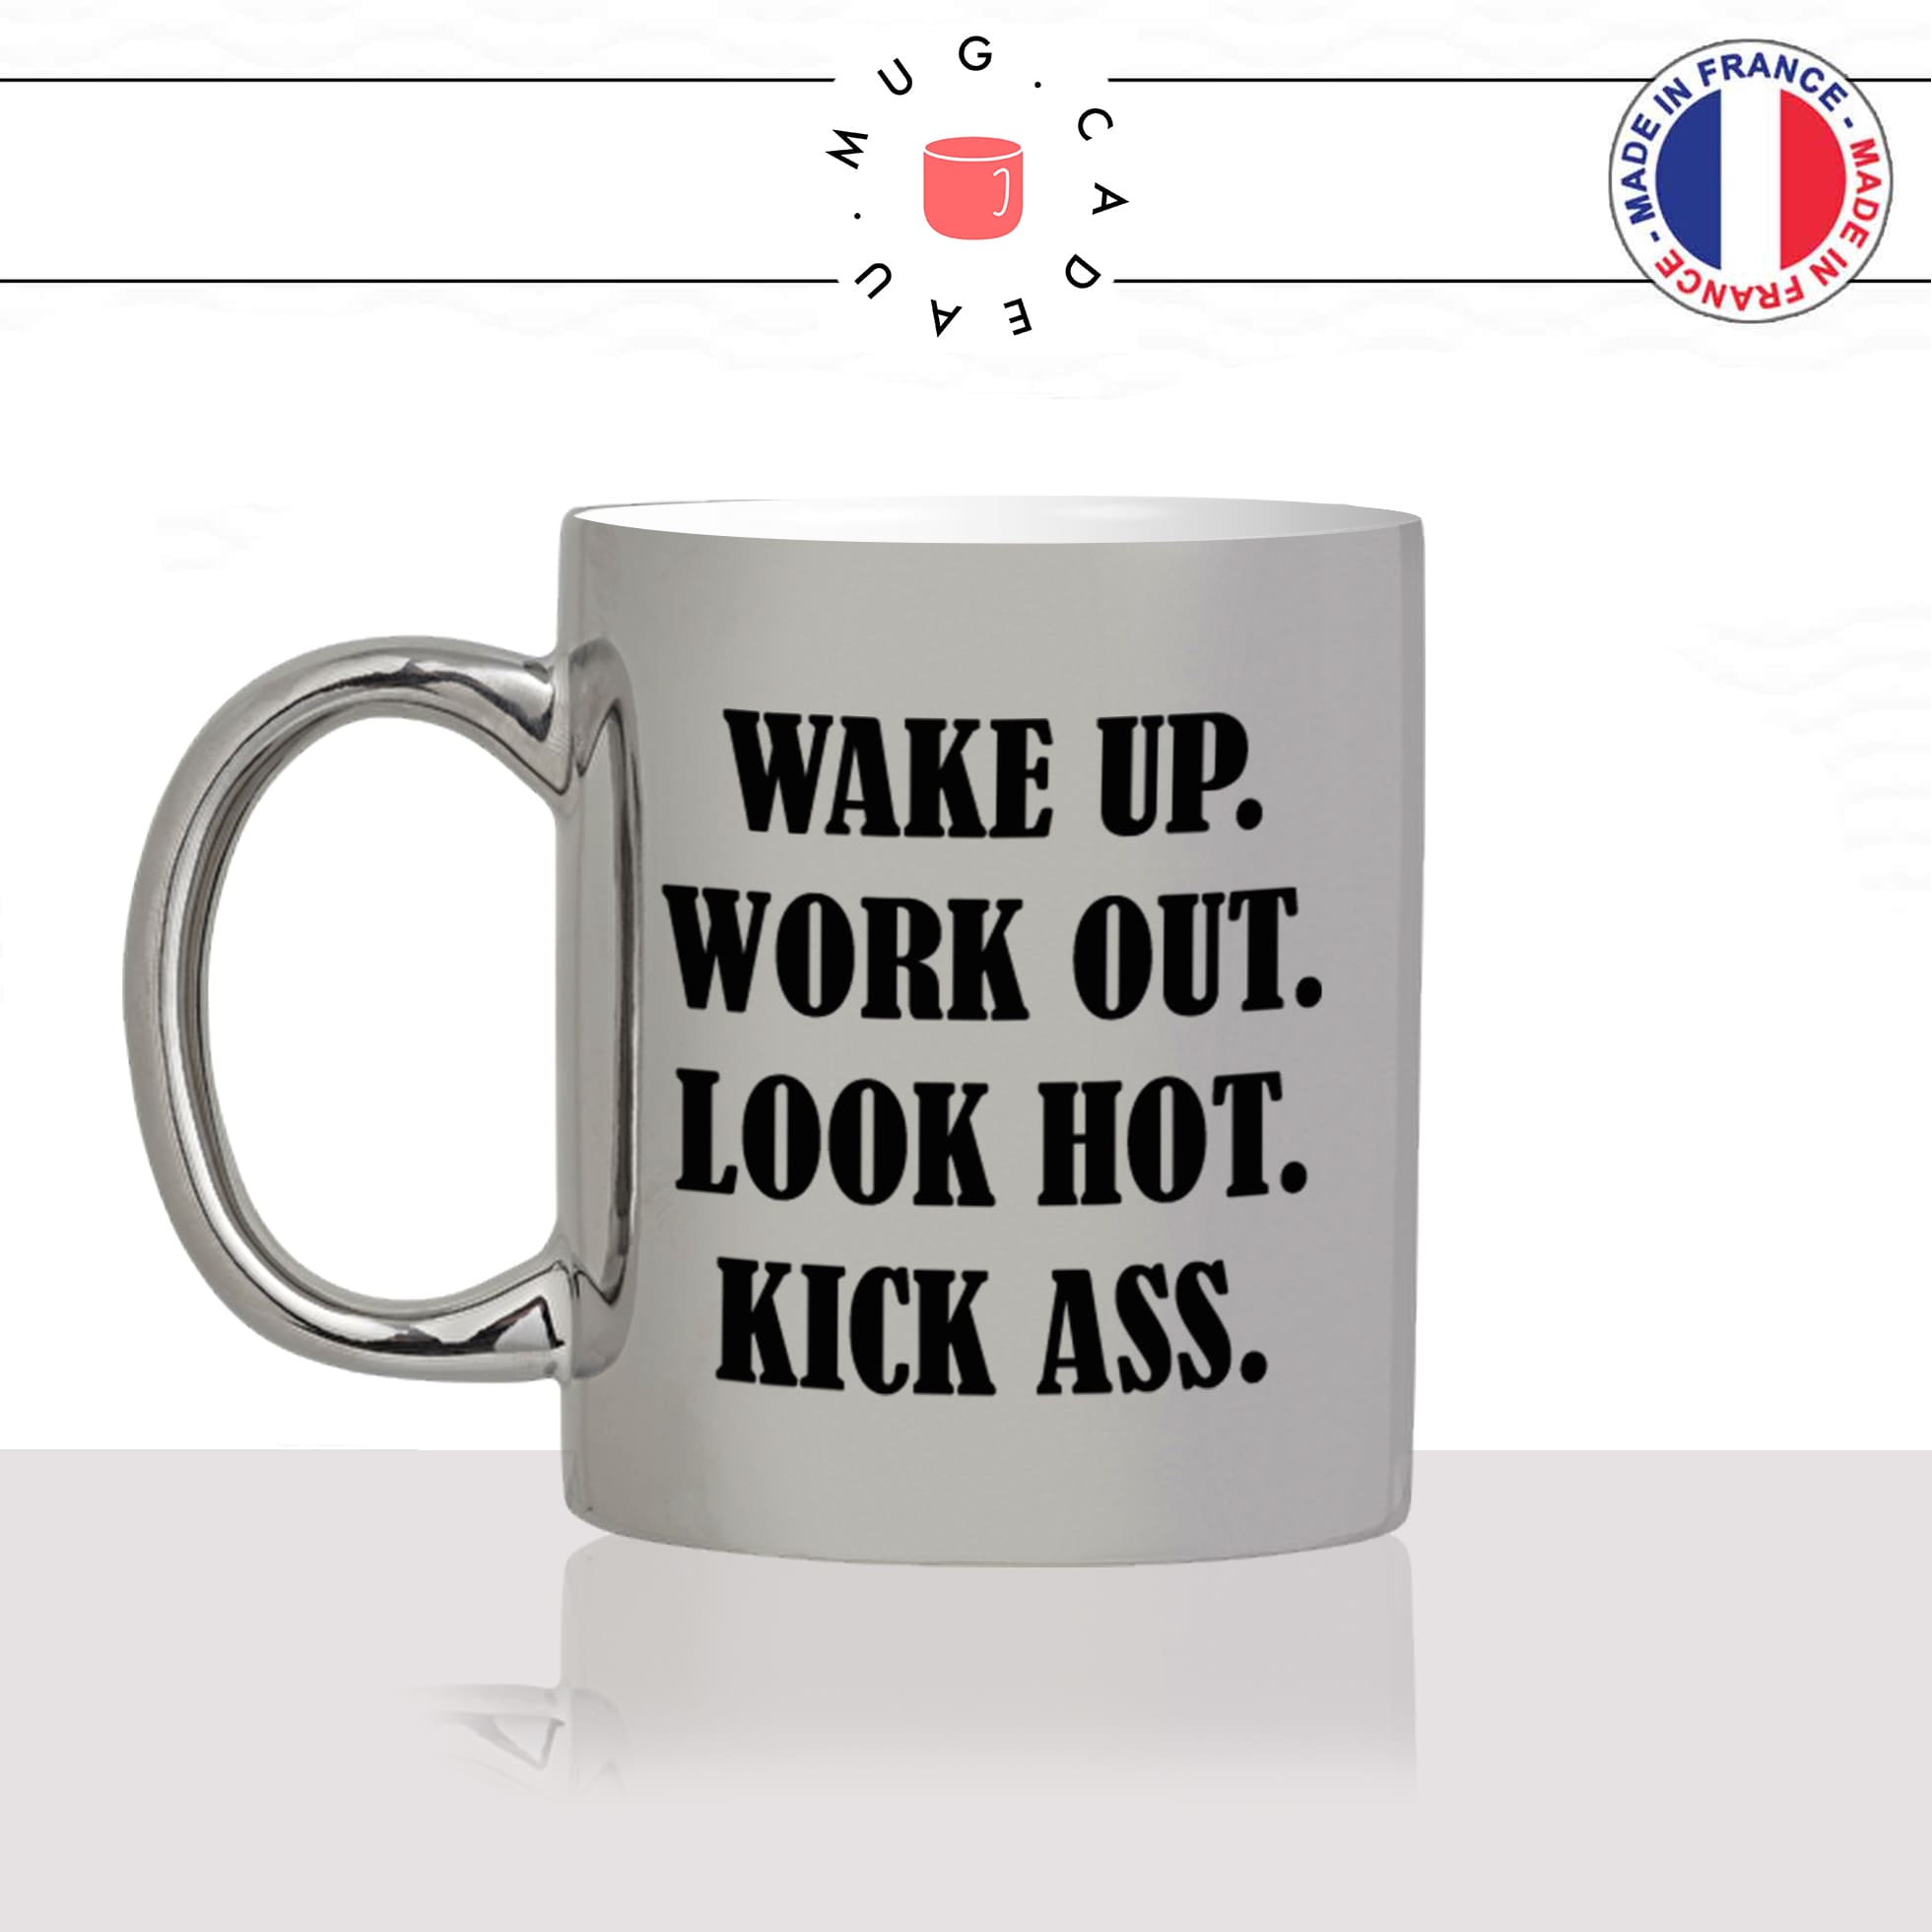 mug-tasse-argent-argenté-silver-wake-up-kick-ass-fitness-musculation-sport-collegue-motivation-humour-idée-cadeau-fun-cool-café-thé-original-min